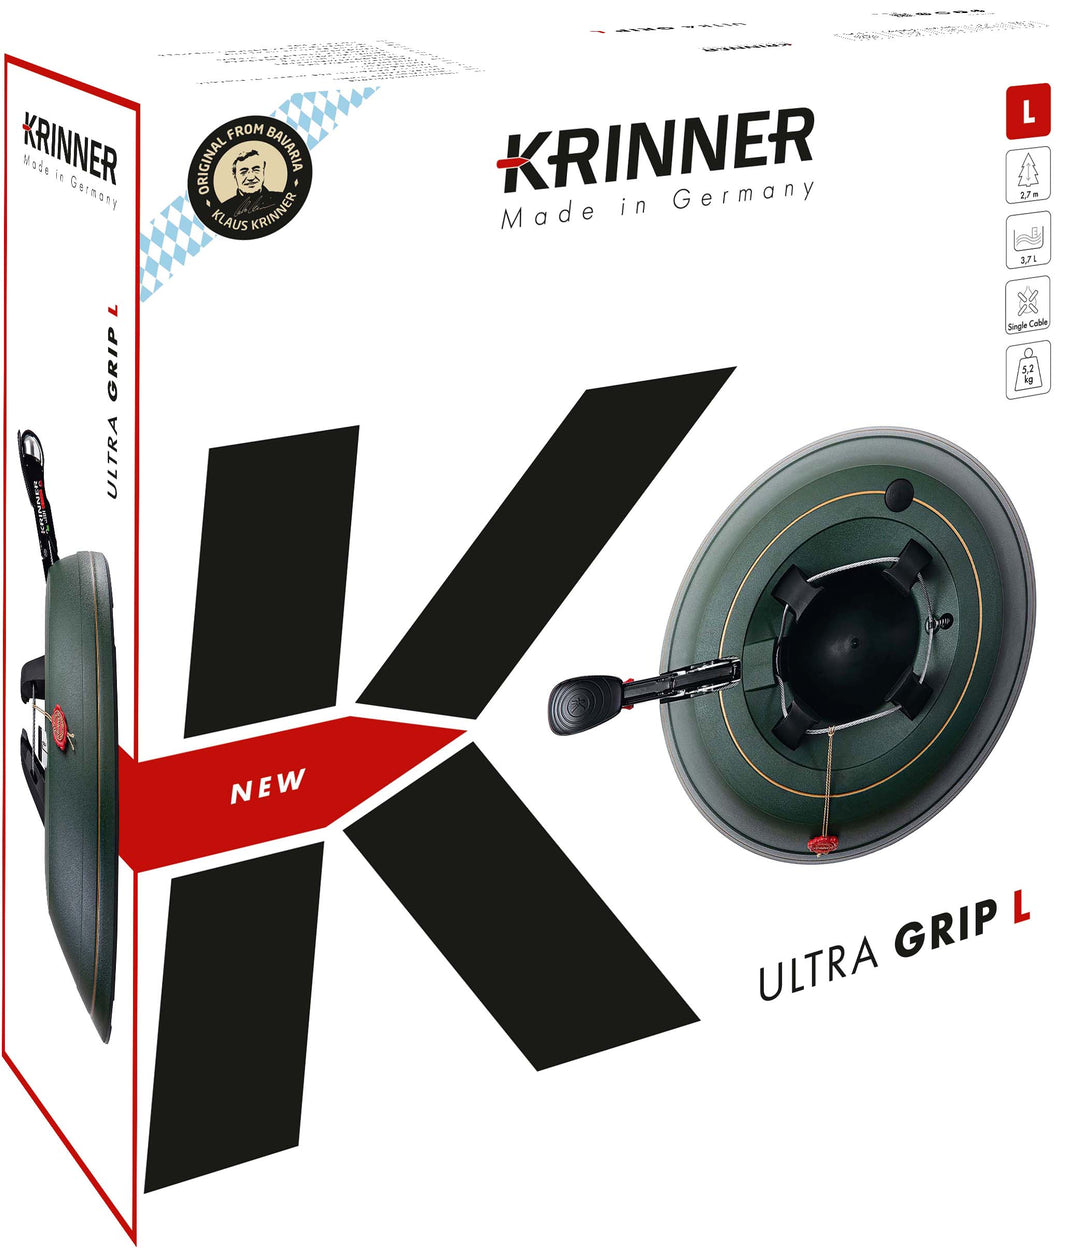 KRINNER Ultra Grip L